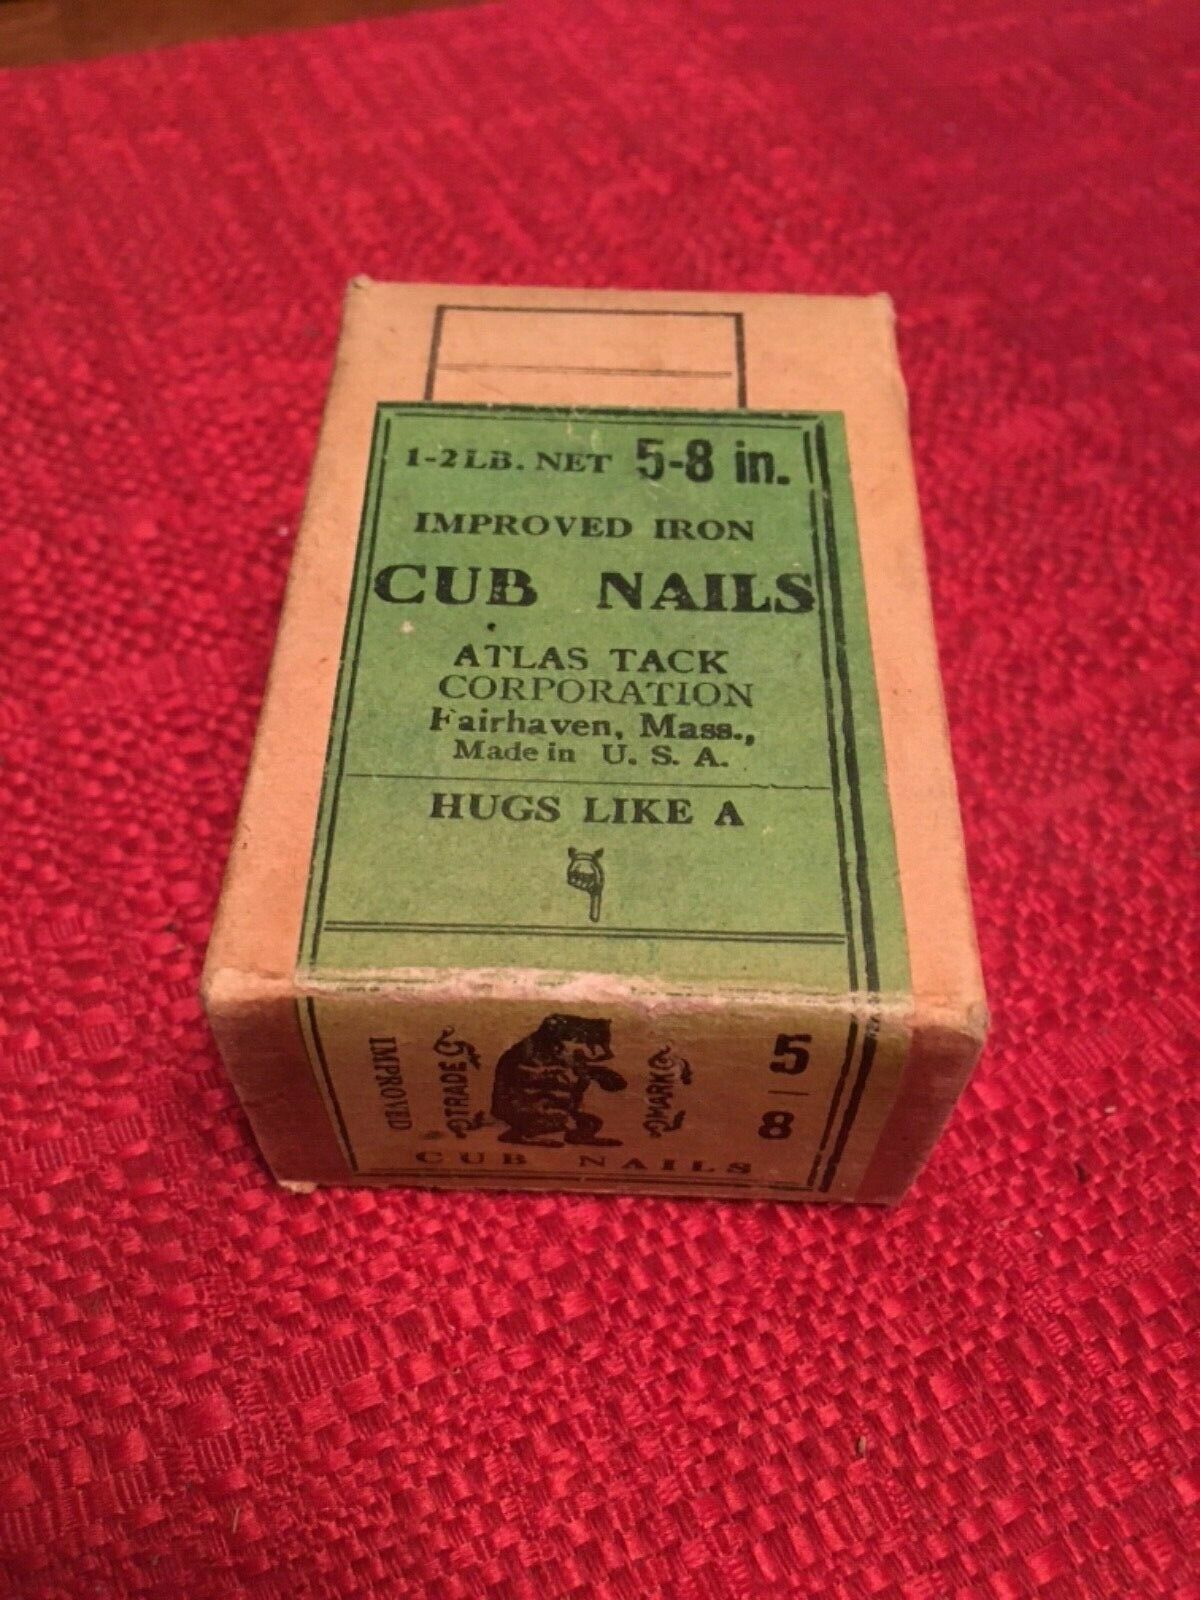 Antique Box Of Cobblers Cub Nails Atlas Tack Co Fairhaven Mass Orig Box Full 5/8